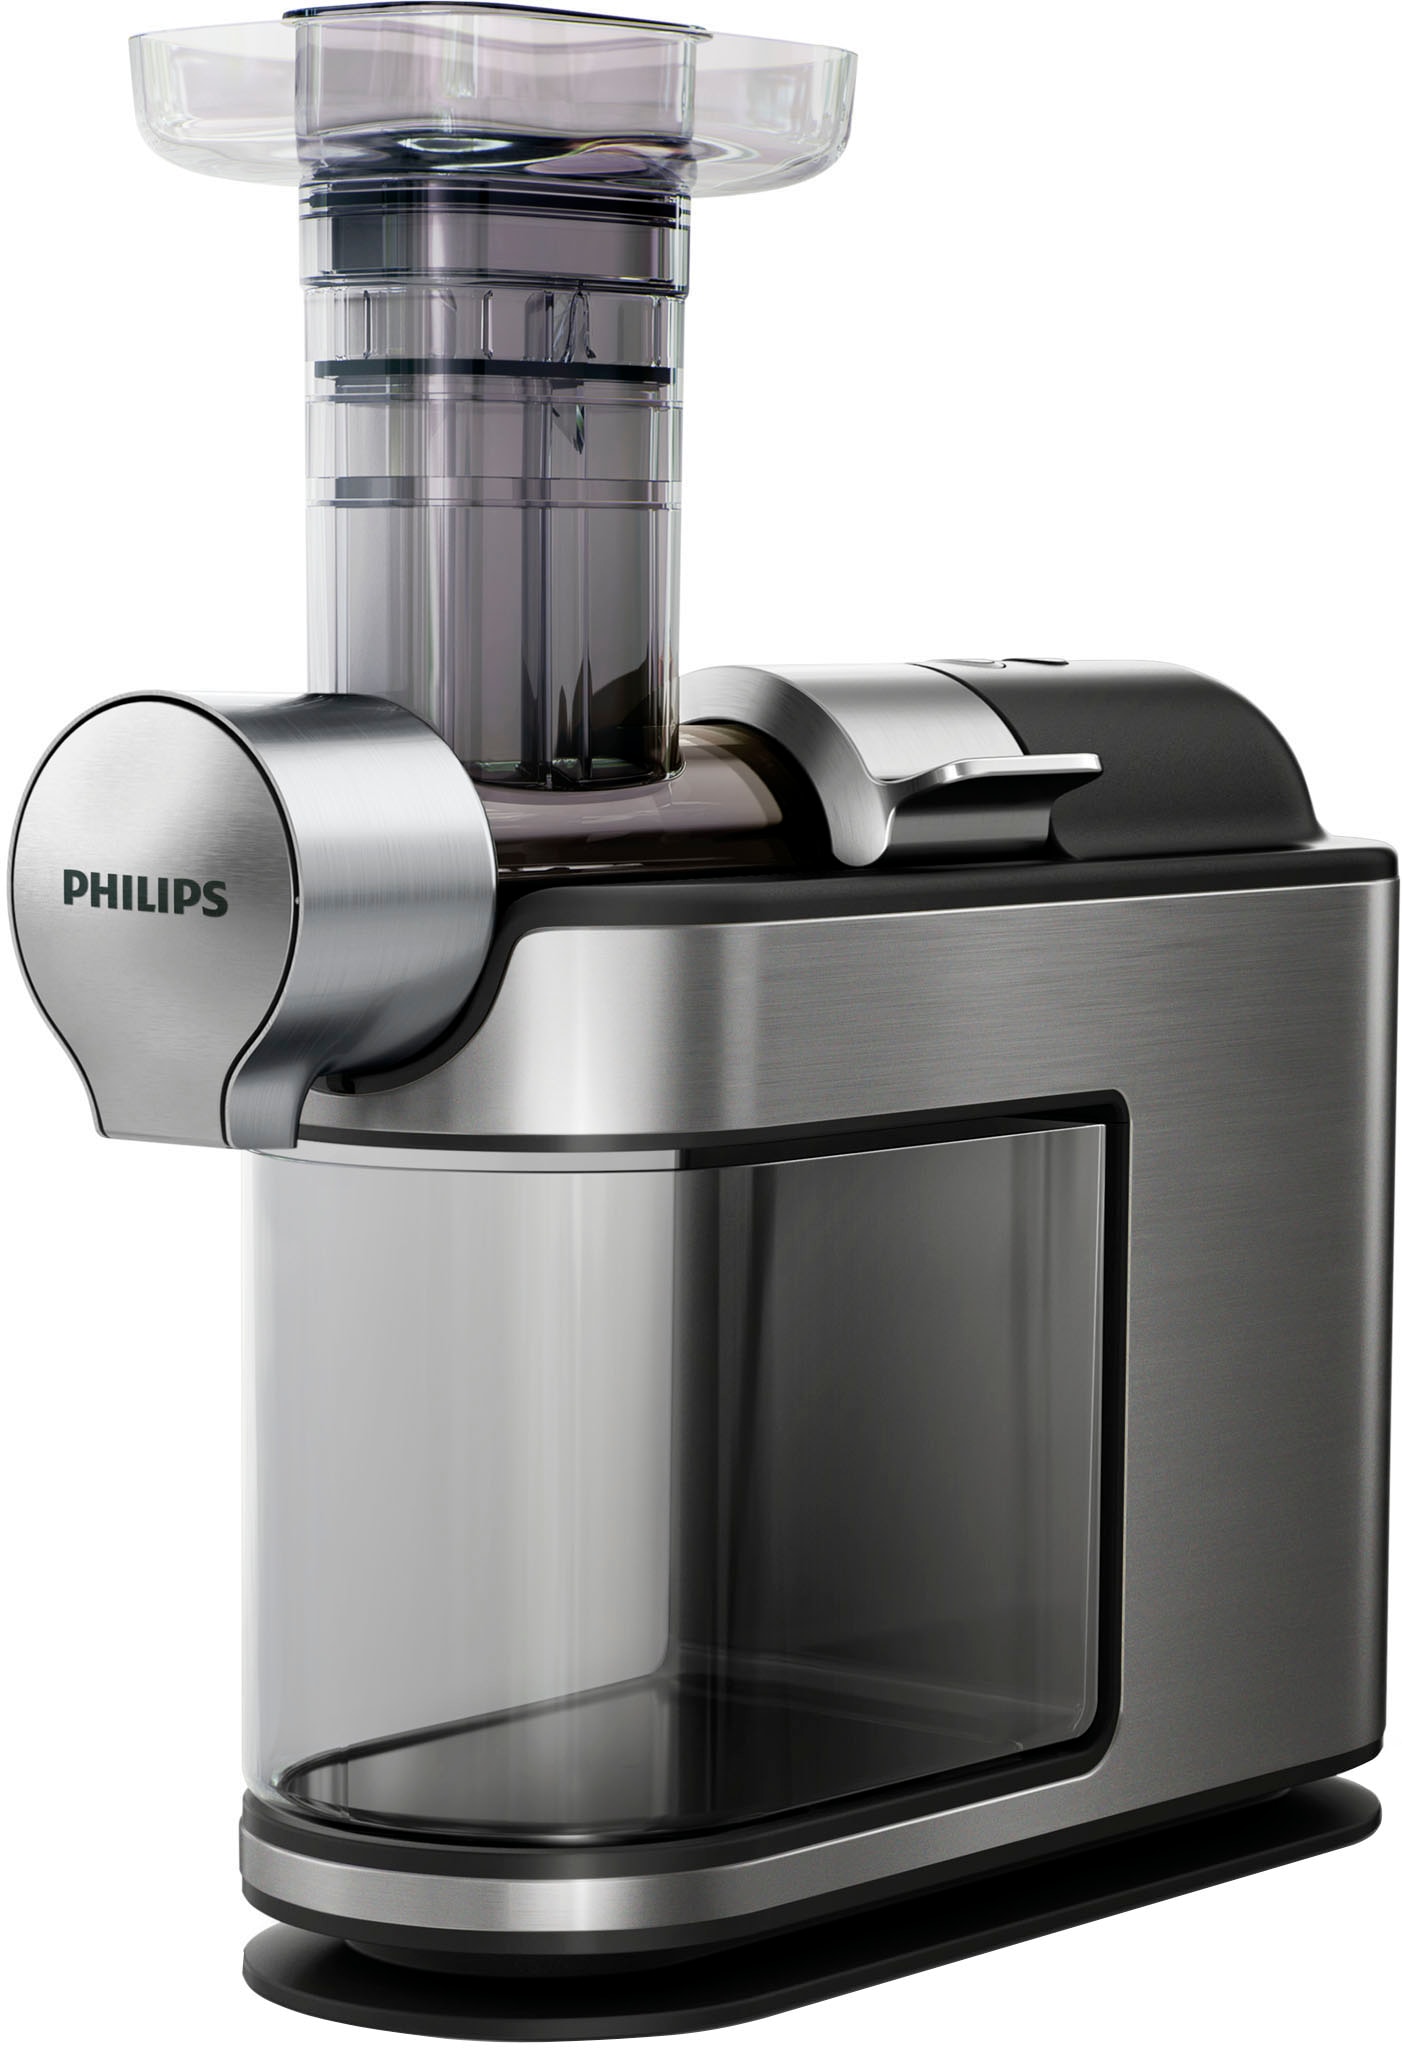 Smart Mahlwerk Philips mit Papierfilter, 1x4, Dosierung Brew«, Kaffeebohnenbehälter und All-in-1 Kaffeemaschine »HD7888/01 mit bei online